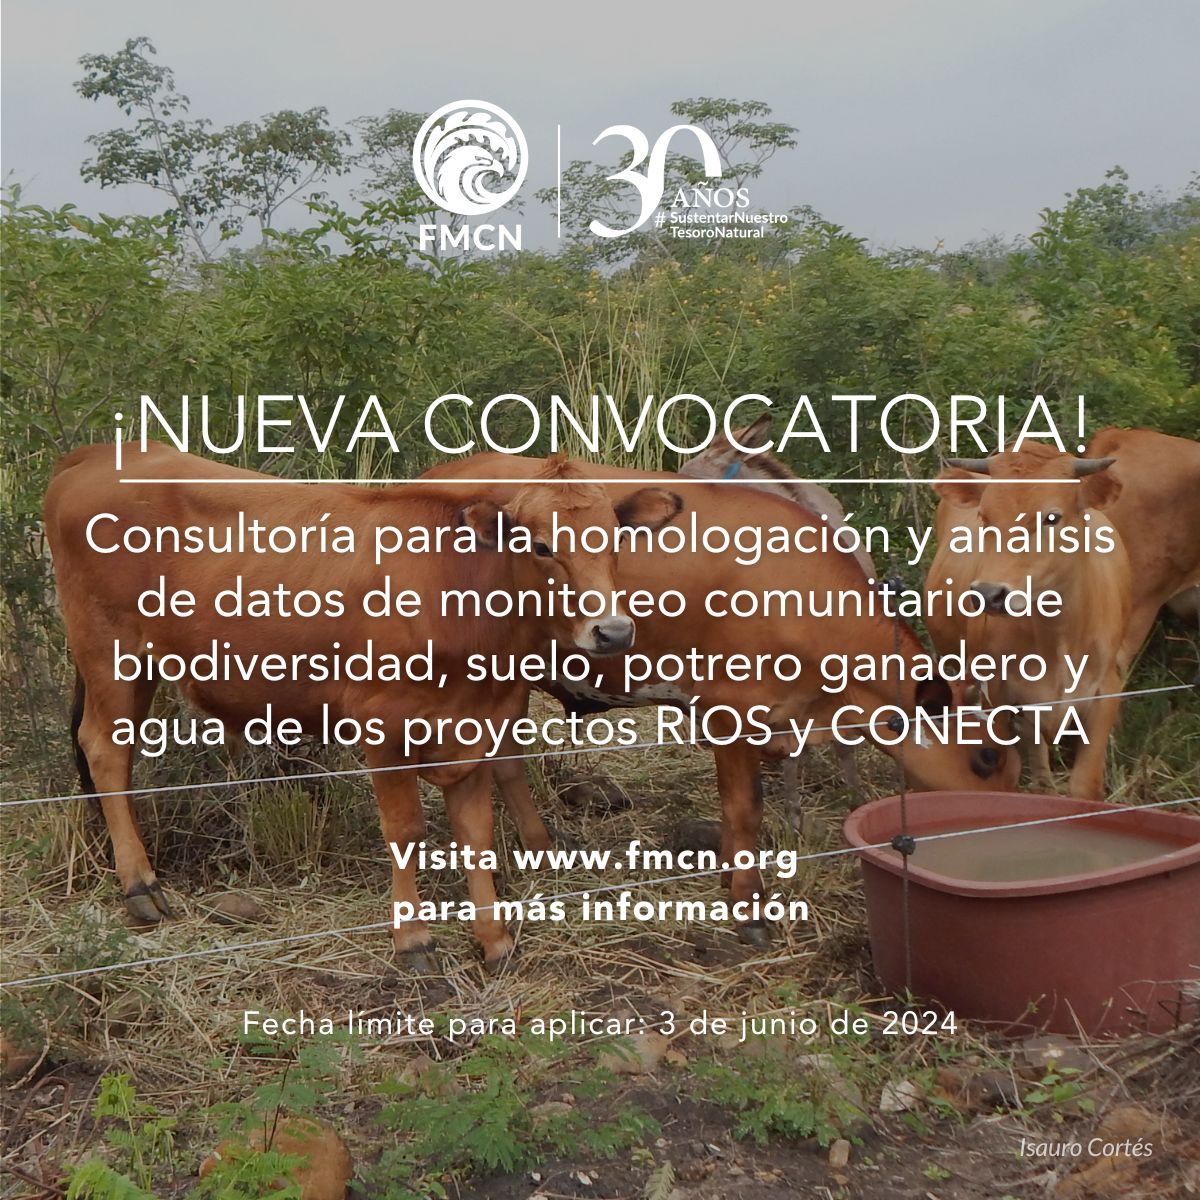 Vacante – Consultoría Homologación y análisis de datos de monitoreo comunitario de biodiversidad, suelo, potrero ganadero y agua de los proyectos RÍOS y CONECTA (FMCN)